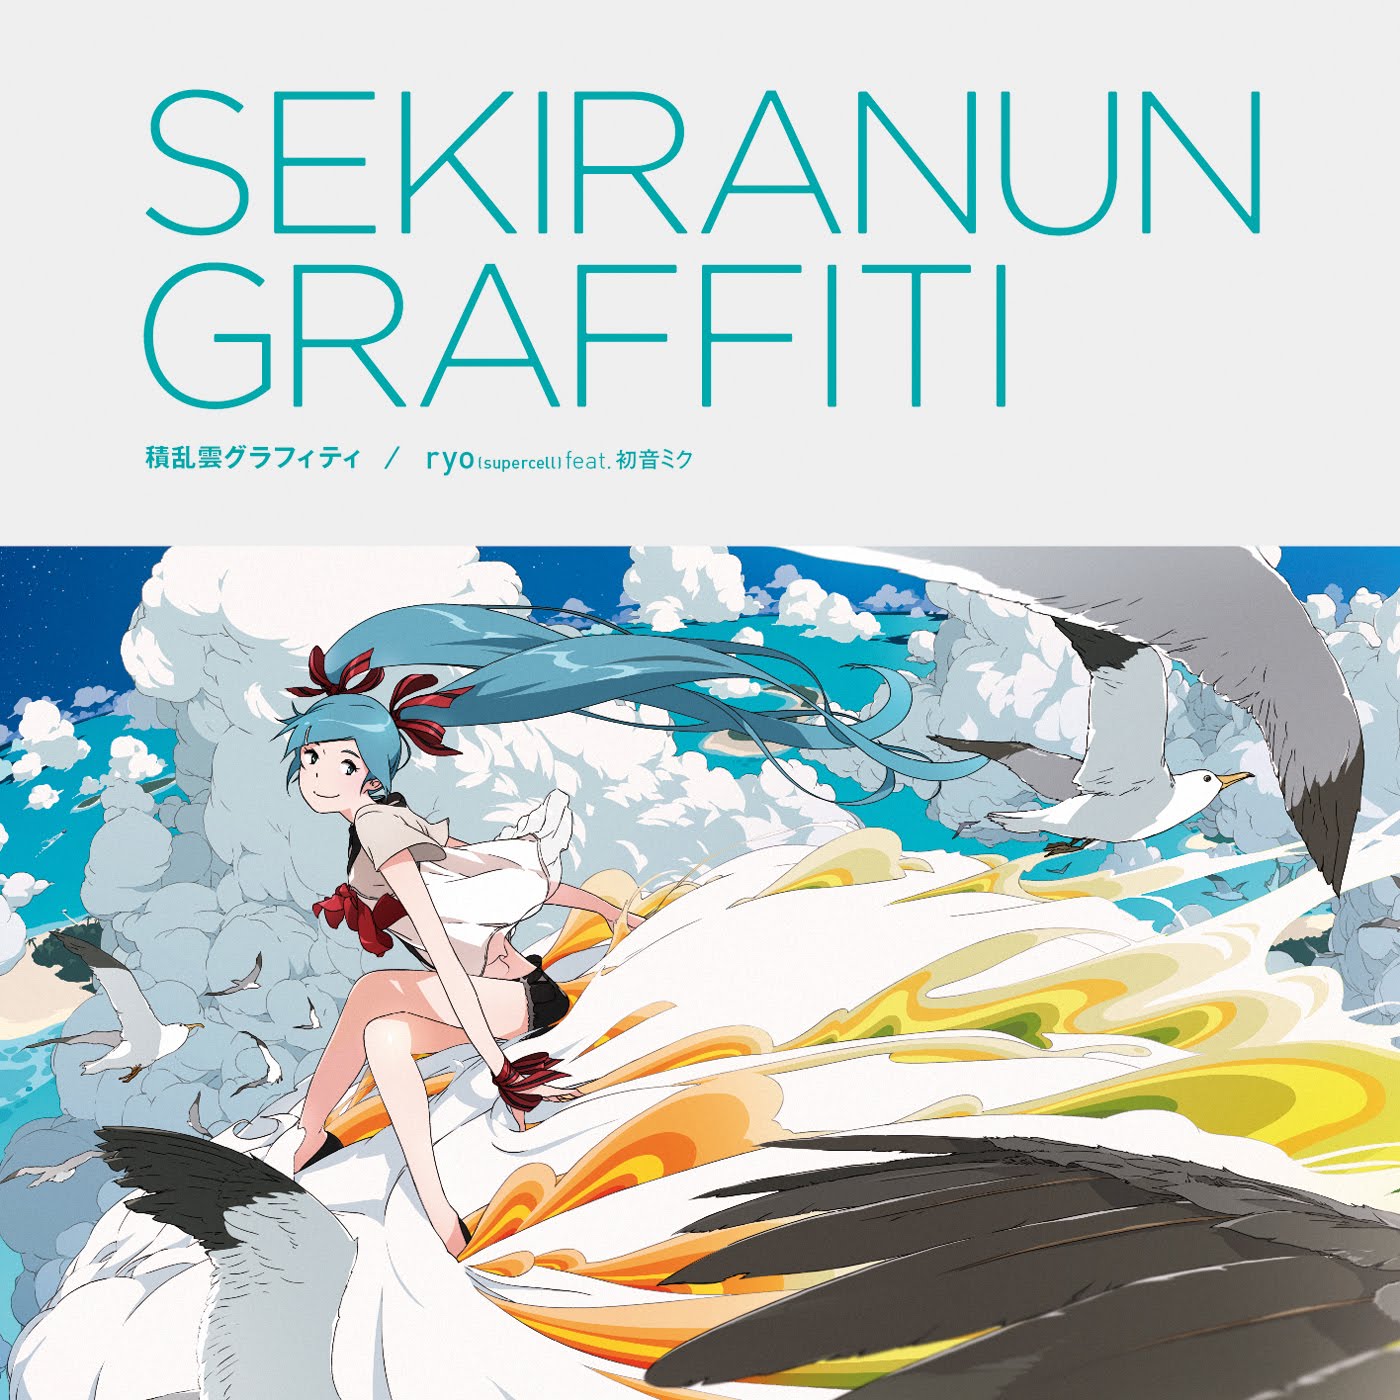 Sekiranun_graffiti